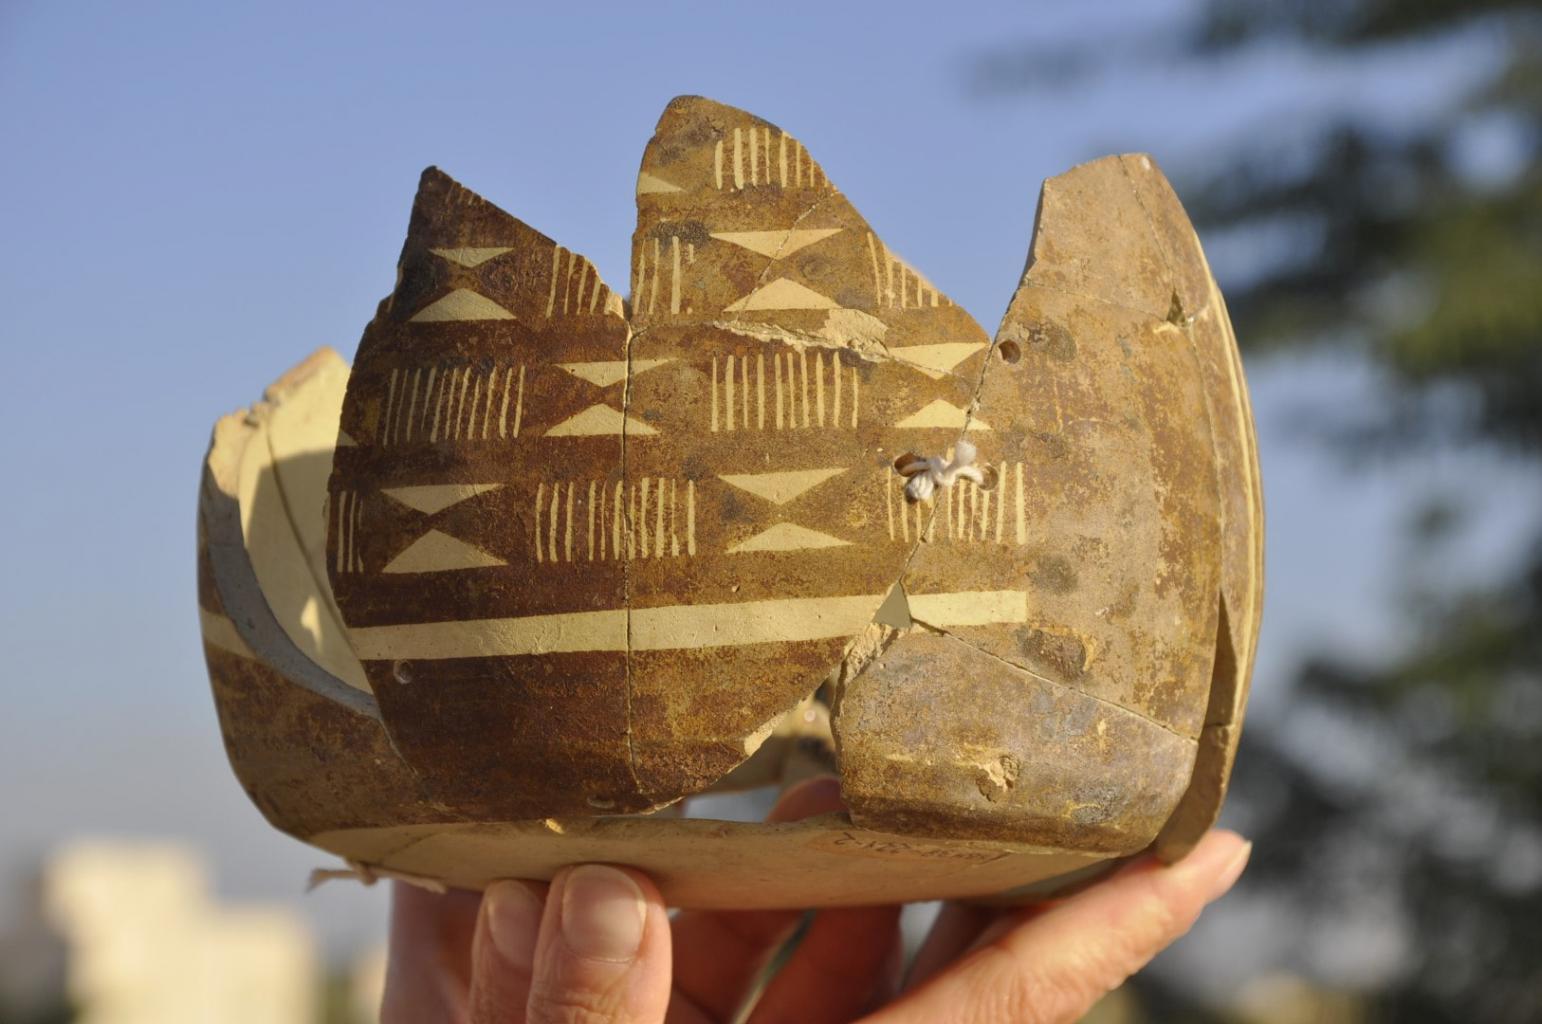 Przykładowy fragment naczynia kultury ubaidzkiej (fot. S. Reihe za Centrum Archeologii Sródziemnomorskiej UW)